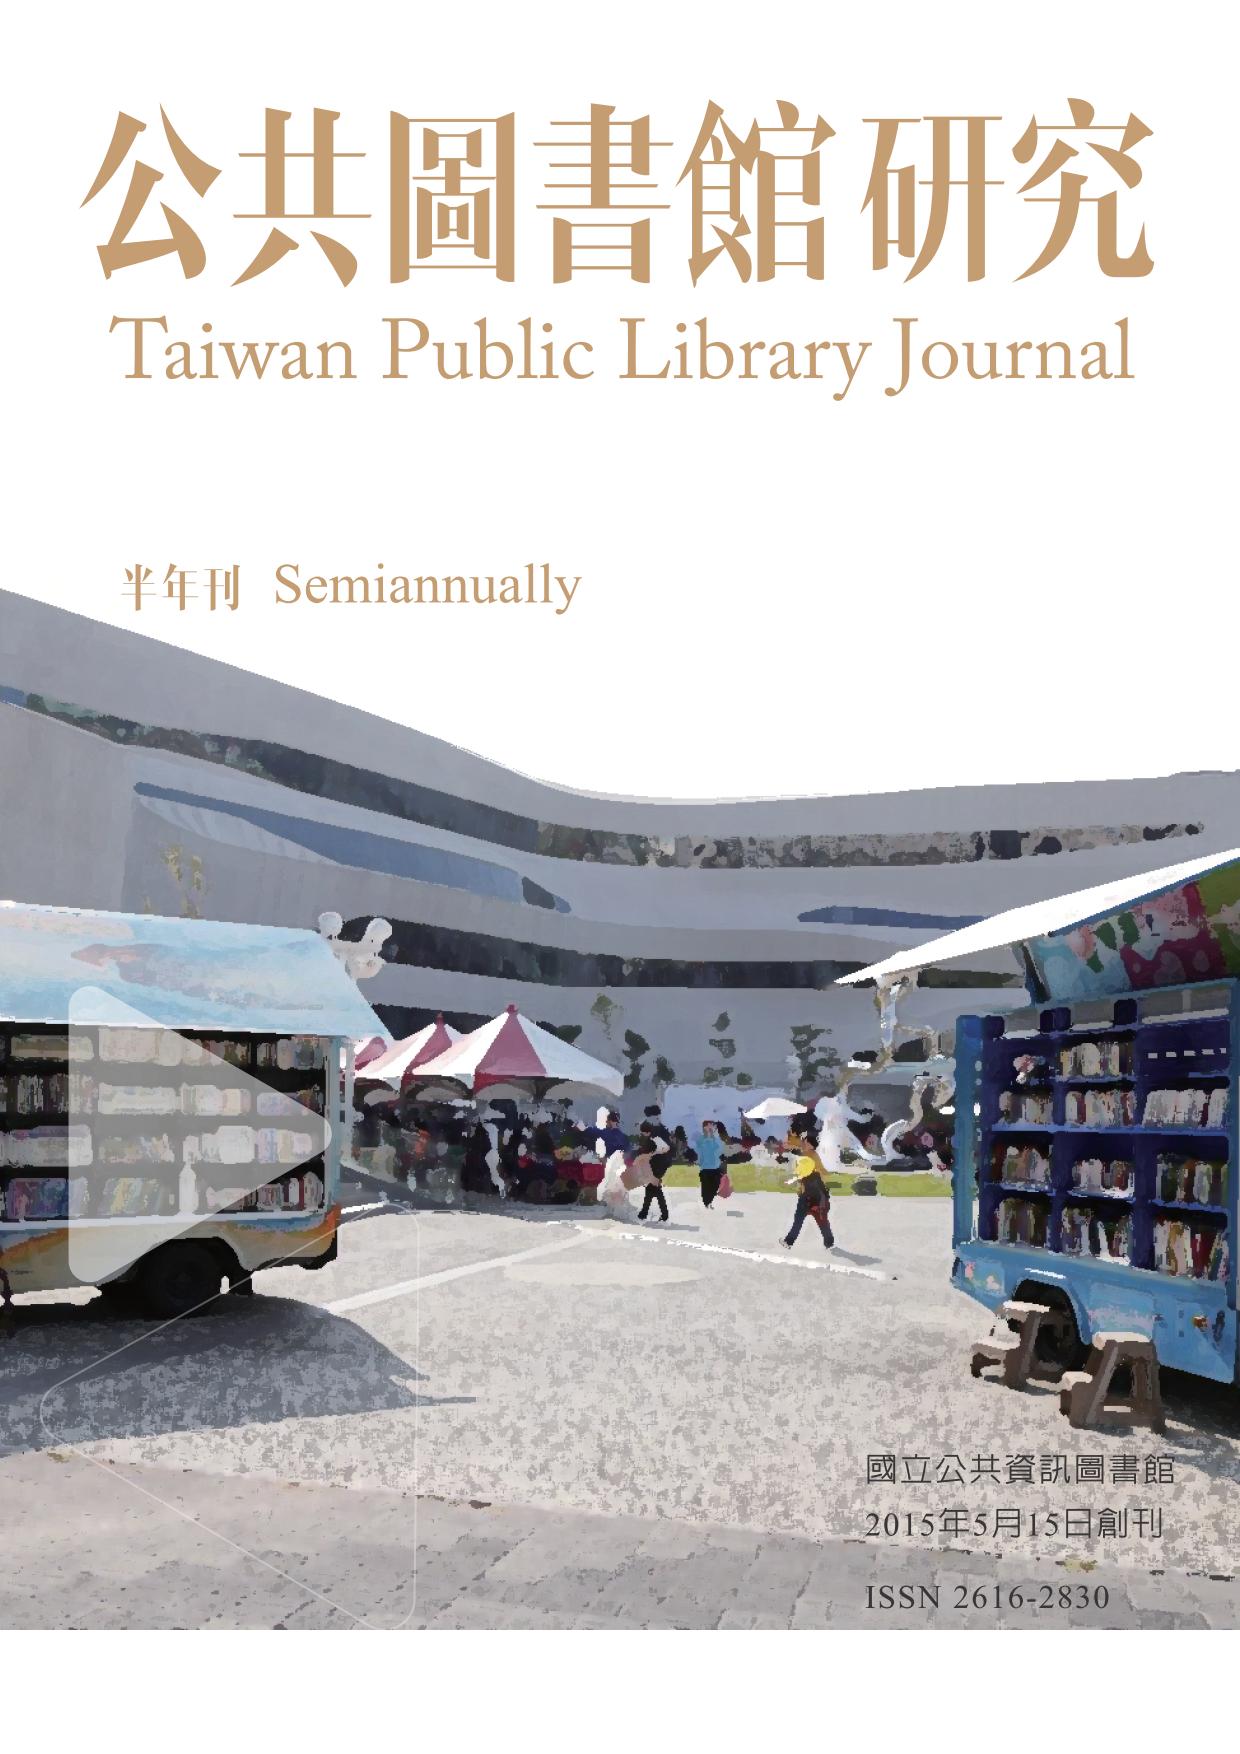 《公共圖書館研究》第13期(2021.05.15)全文